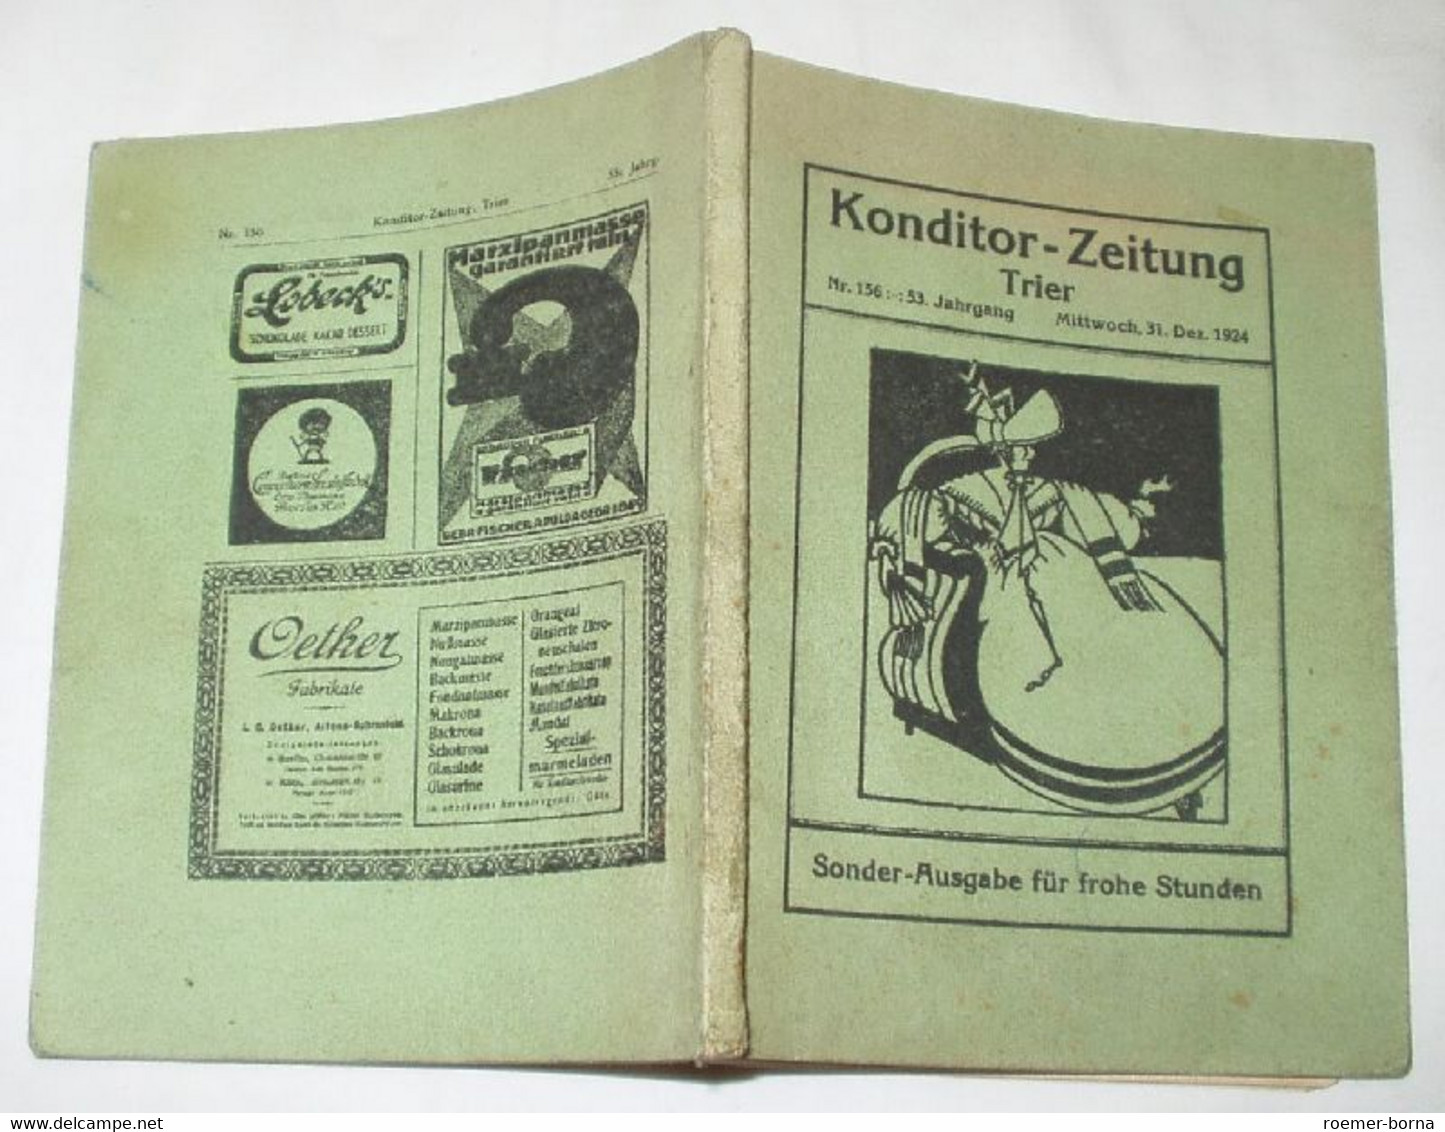 Konditor-Zeitung Trier Konditor-Lieder - Humor